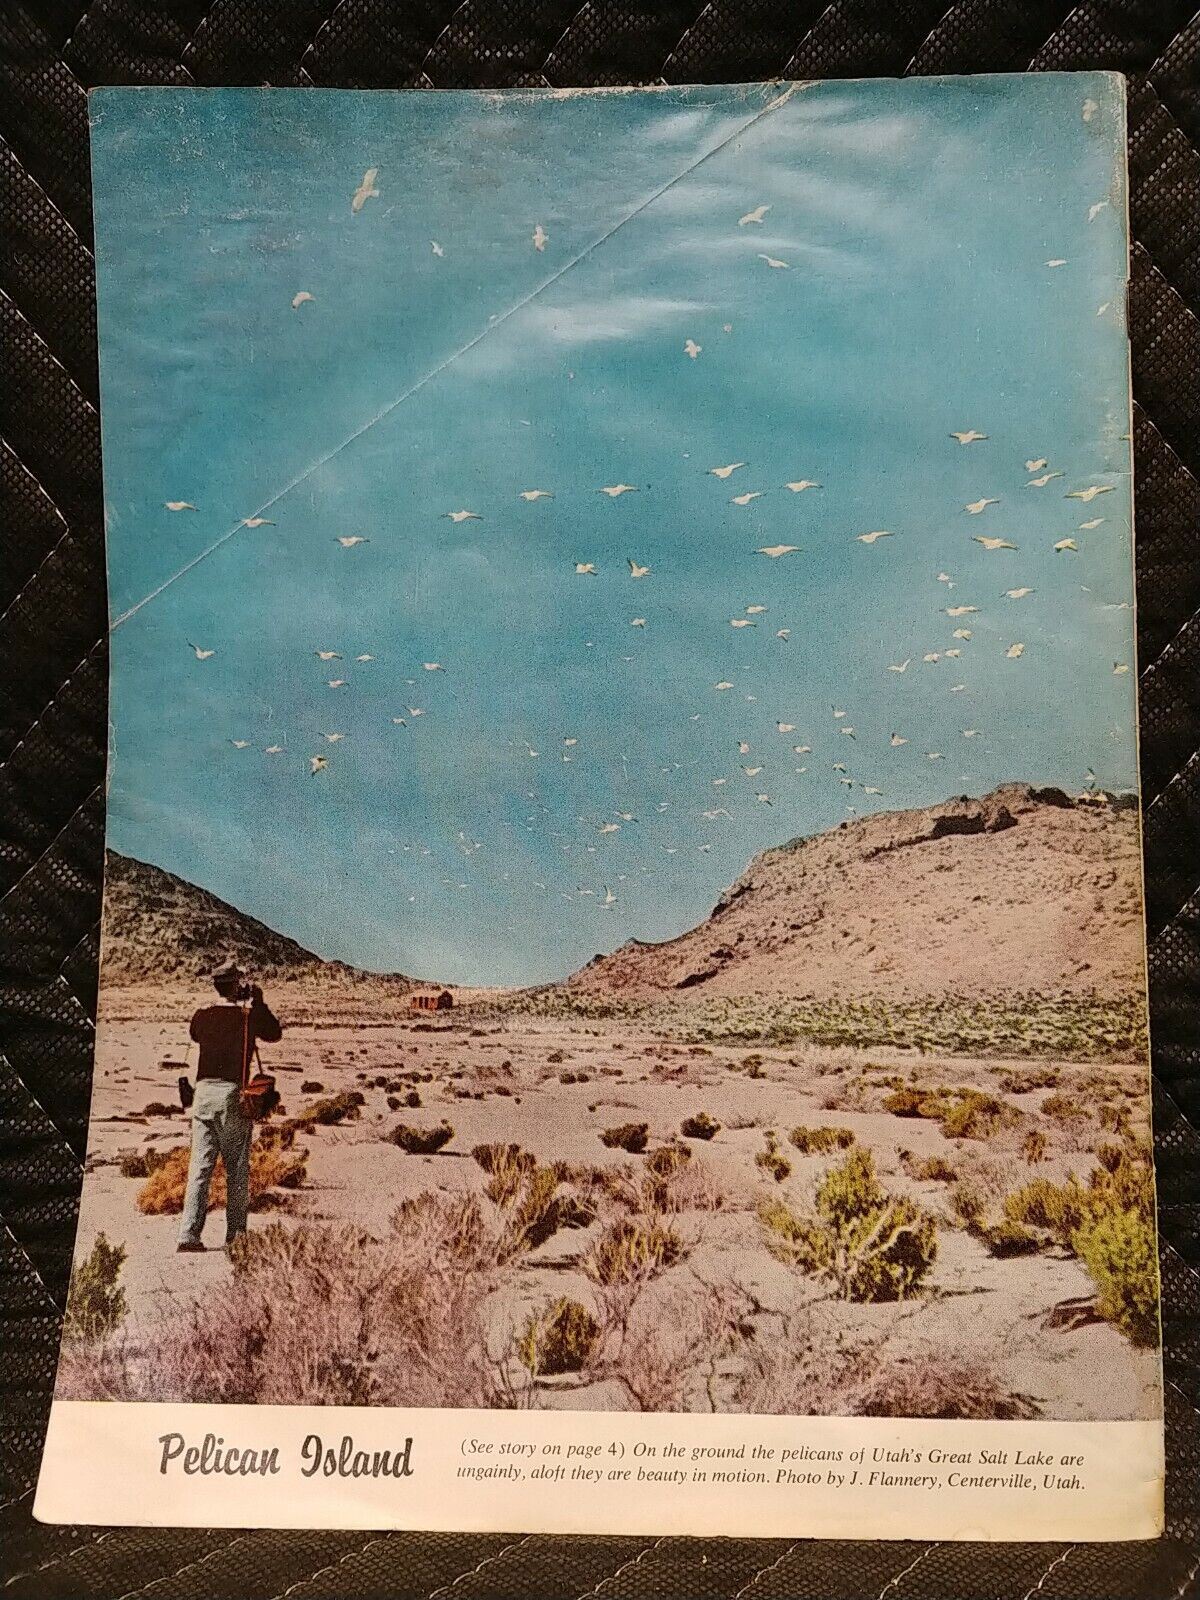 Vintage Desert Magazine September 1959